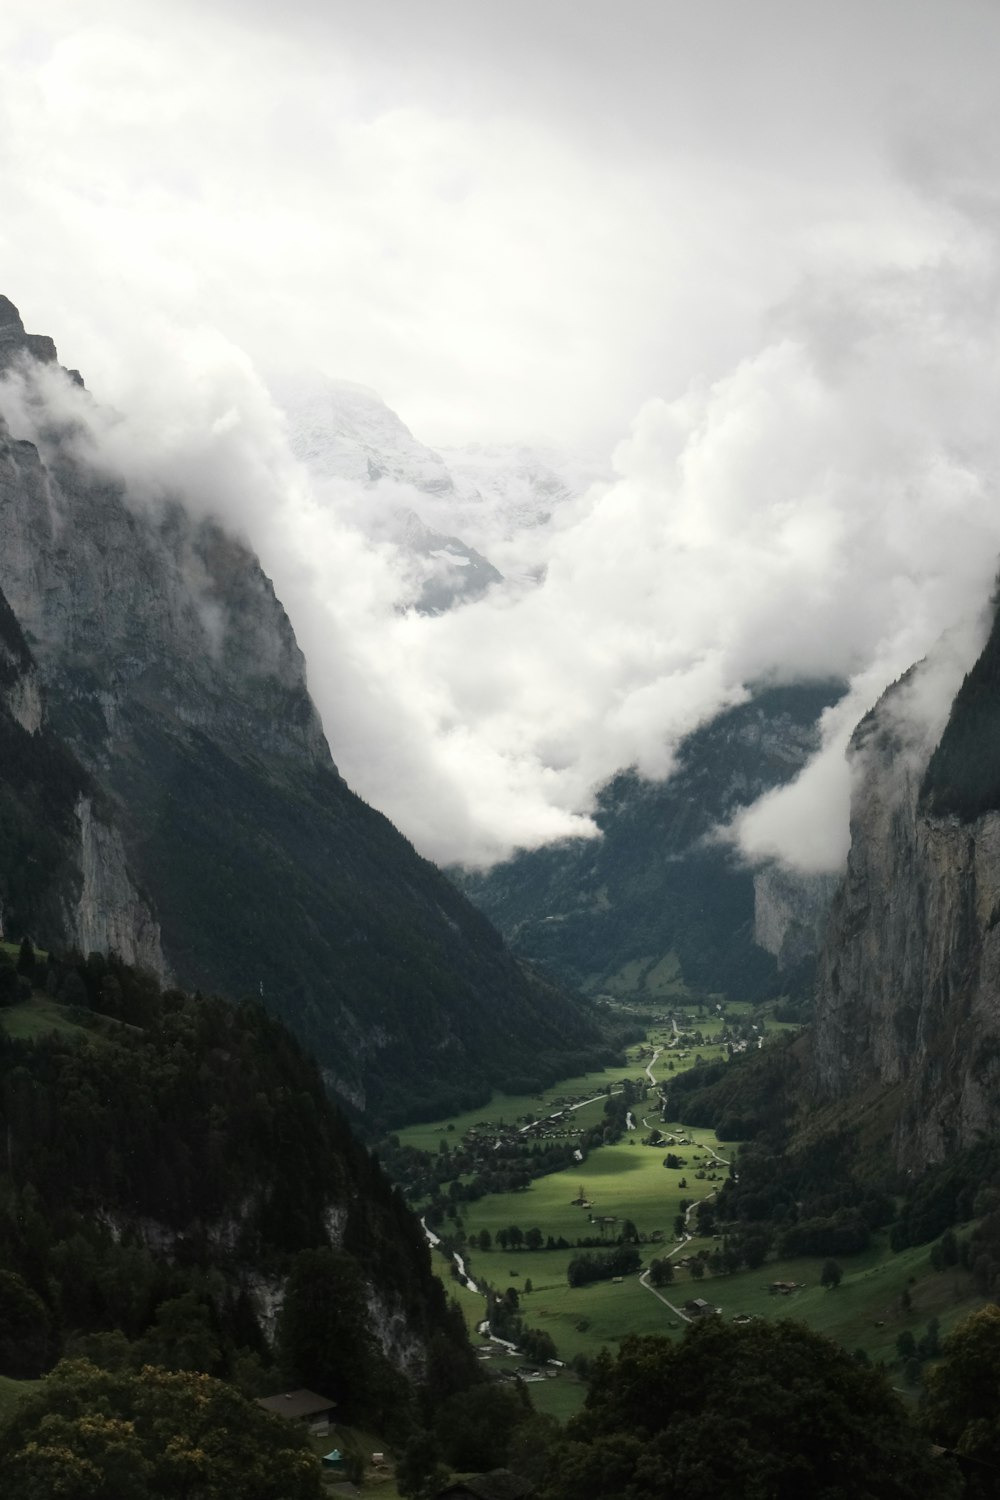 una vista di una valle con le montagne sullo sfondo